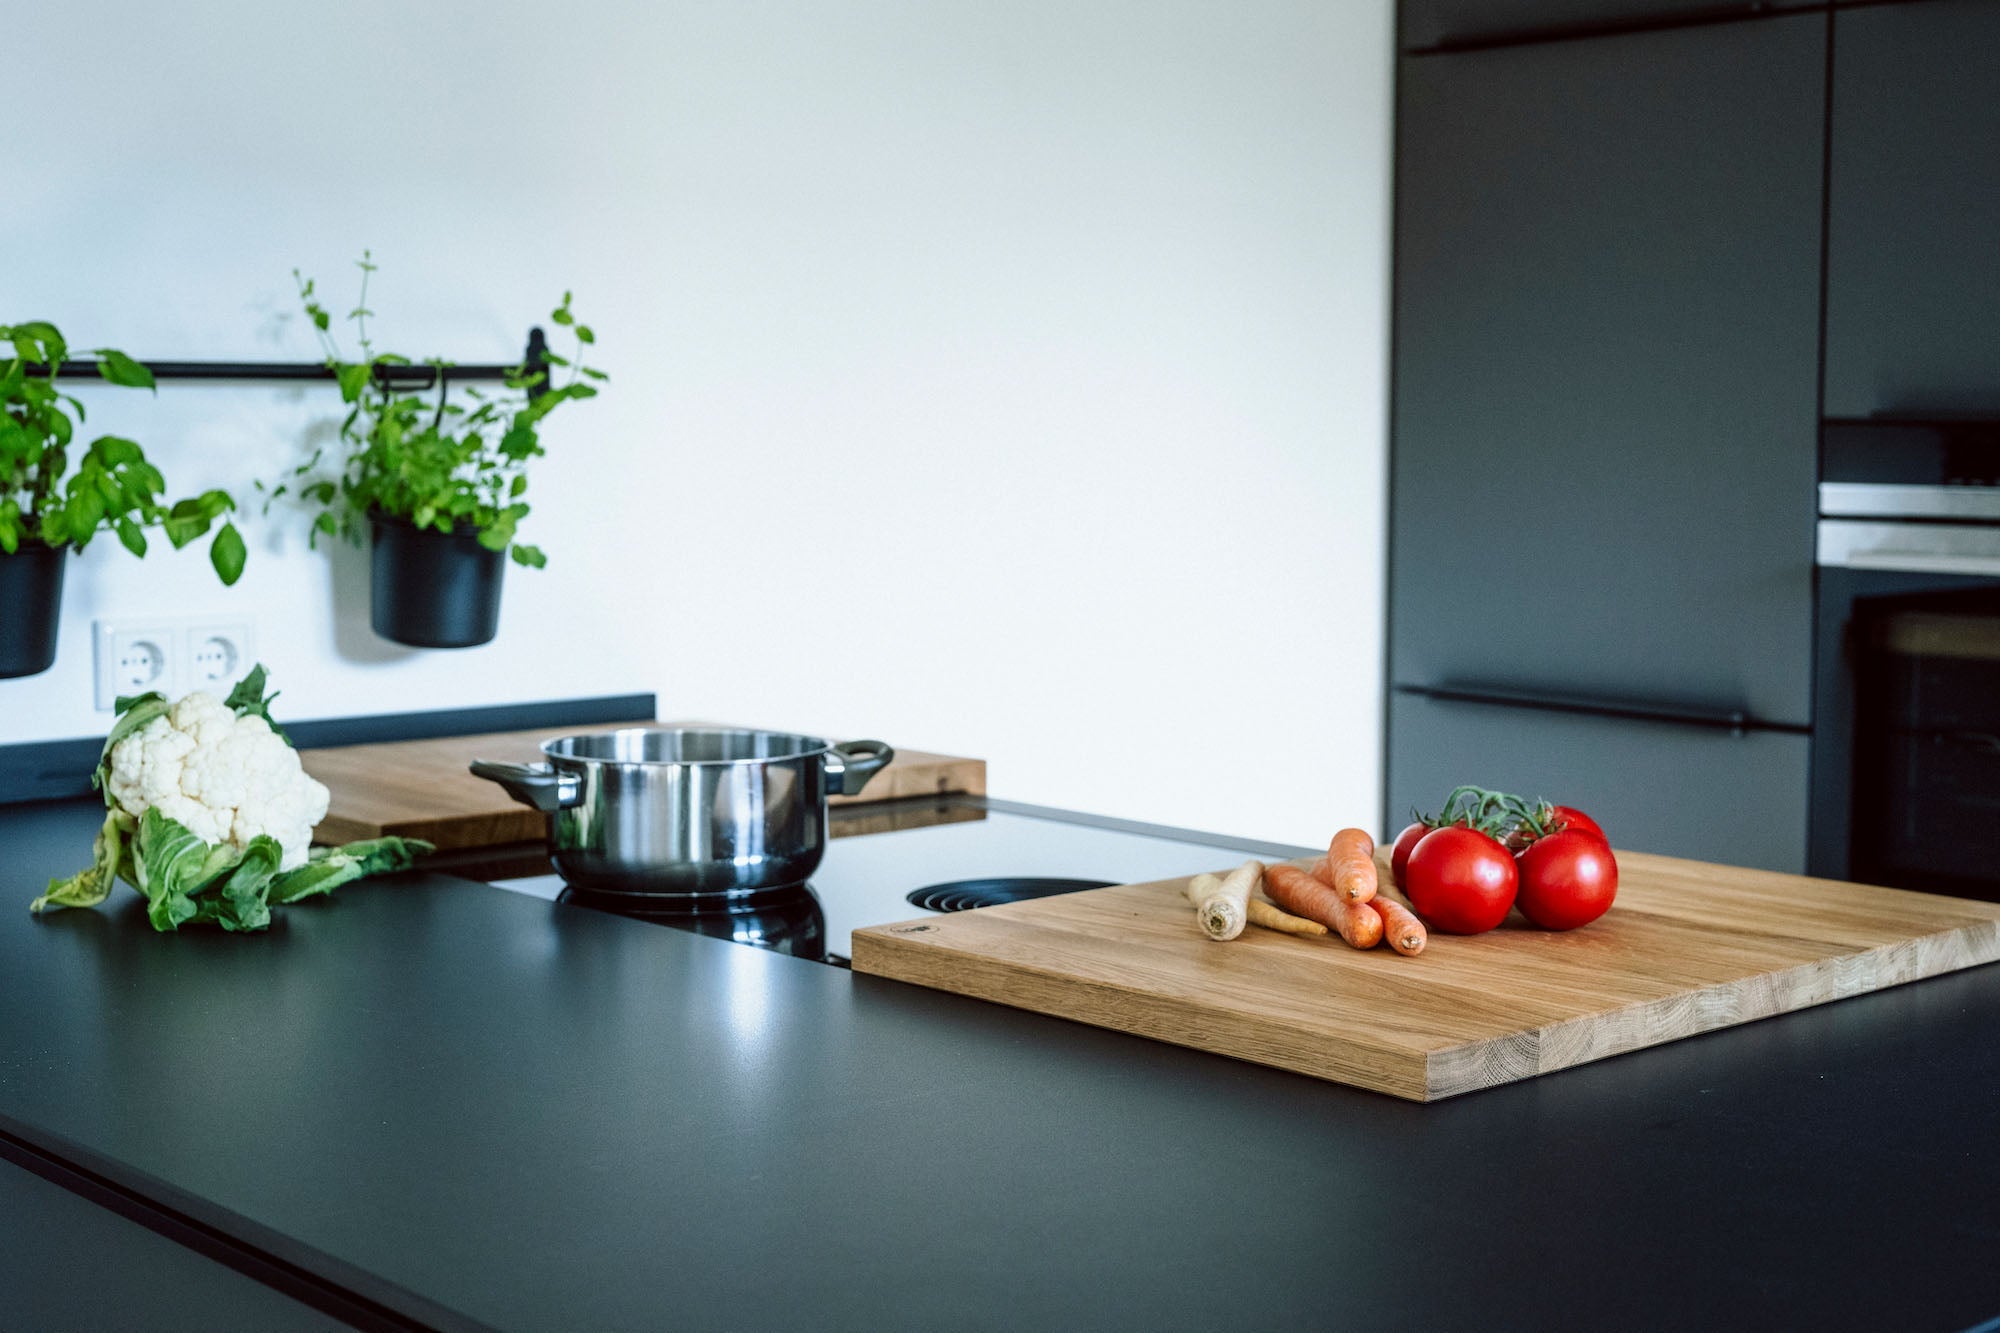 Schwarze Kücheninsel mit Bora Kochfeld auf dem ein Eichen Kochfeldschutz liegt. Auf dem Kochfeld steht noch eine Edelstahltop auf der Kücheninsel liegt ein frischer Blumenkohl. Eine weiße Wand im Hintergrund.